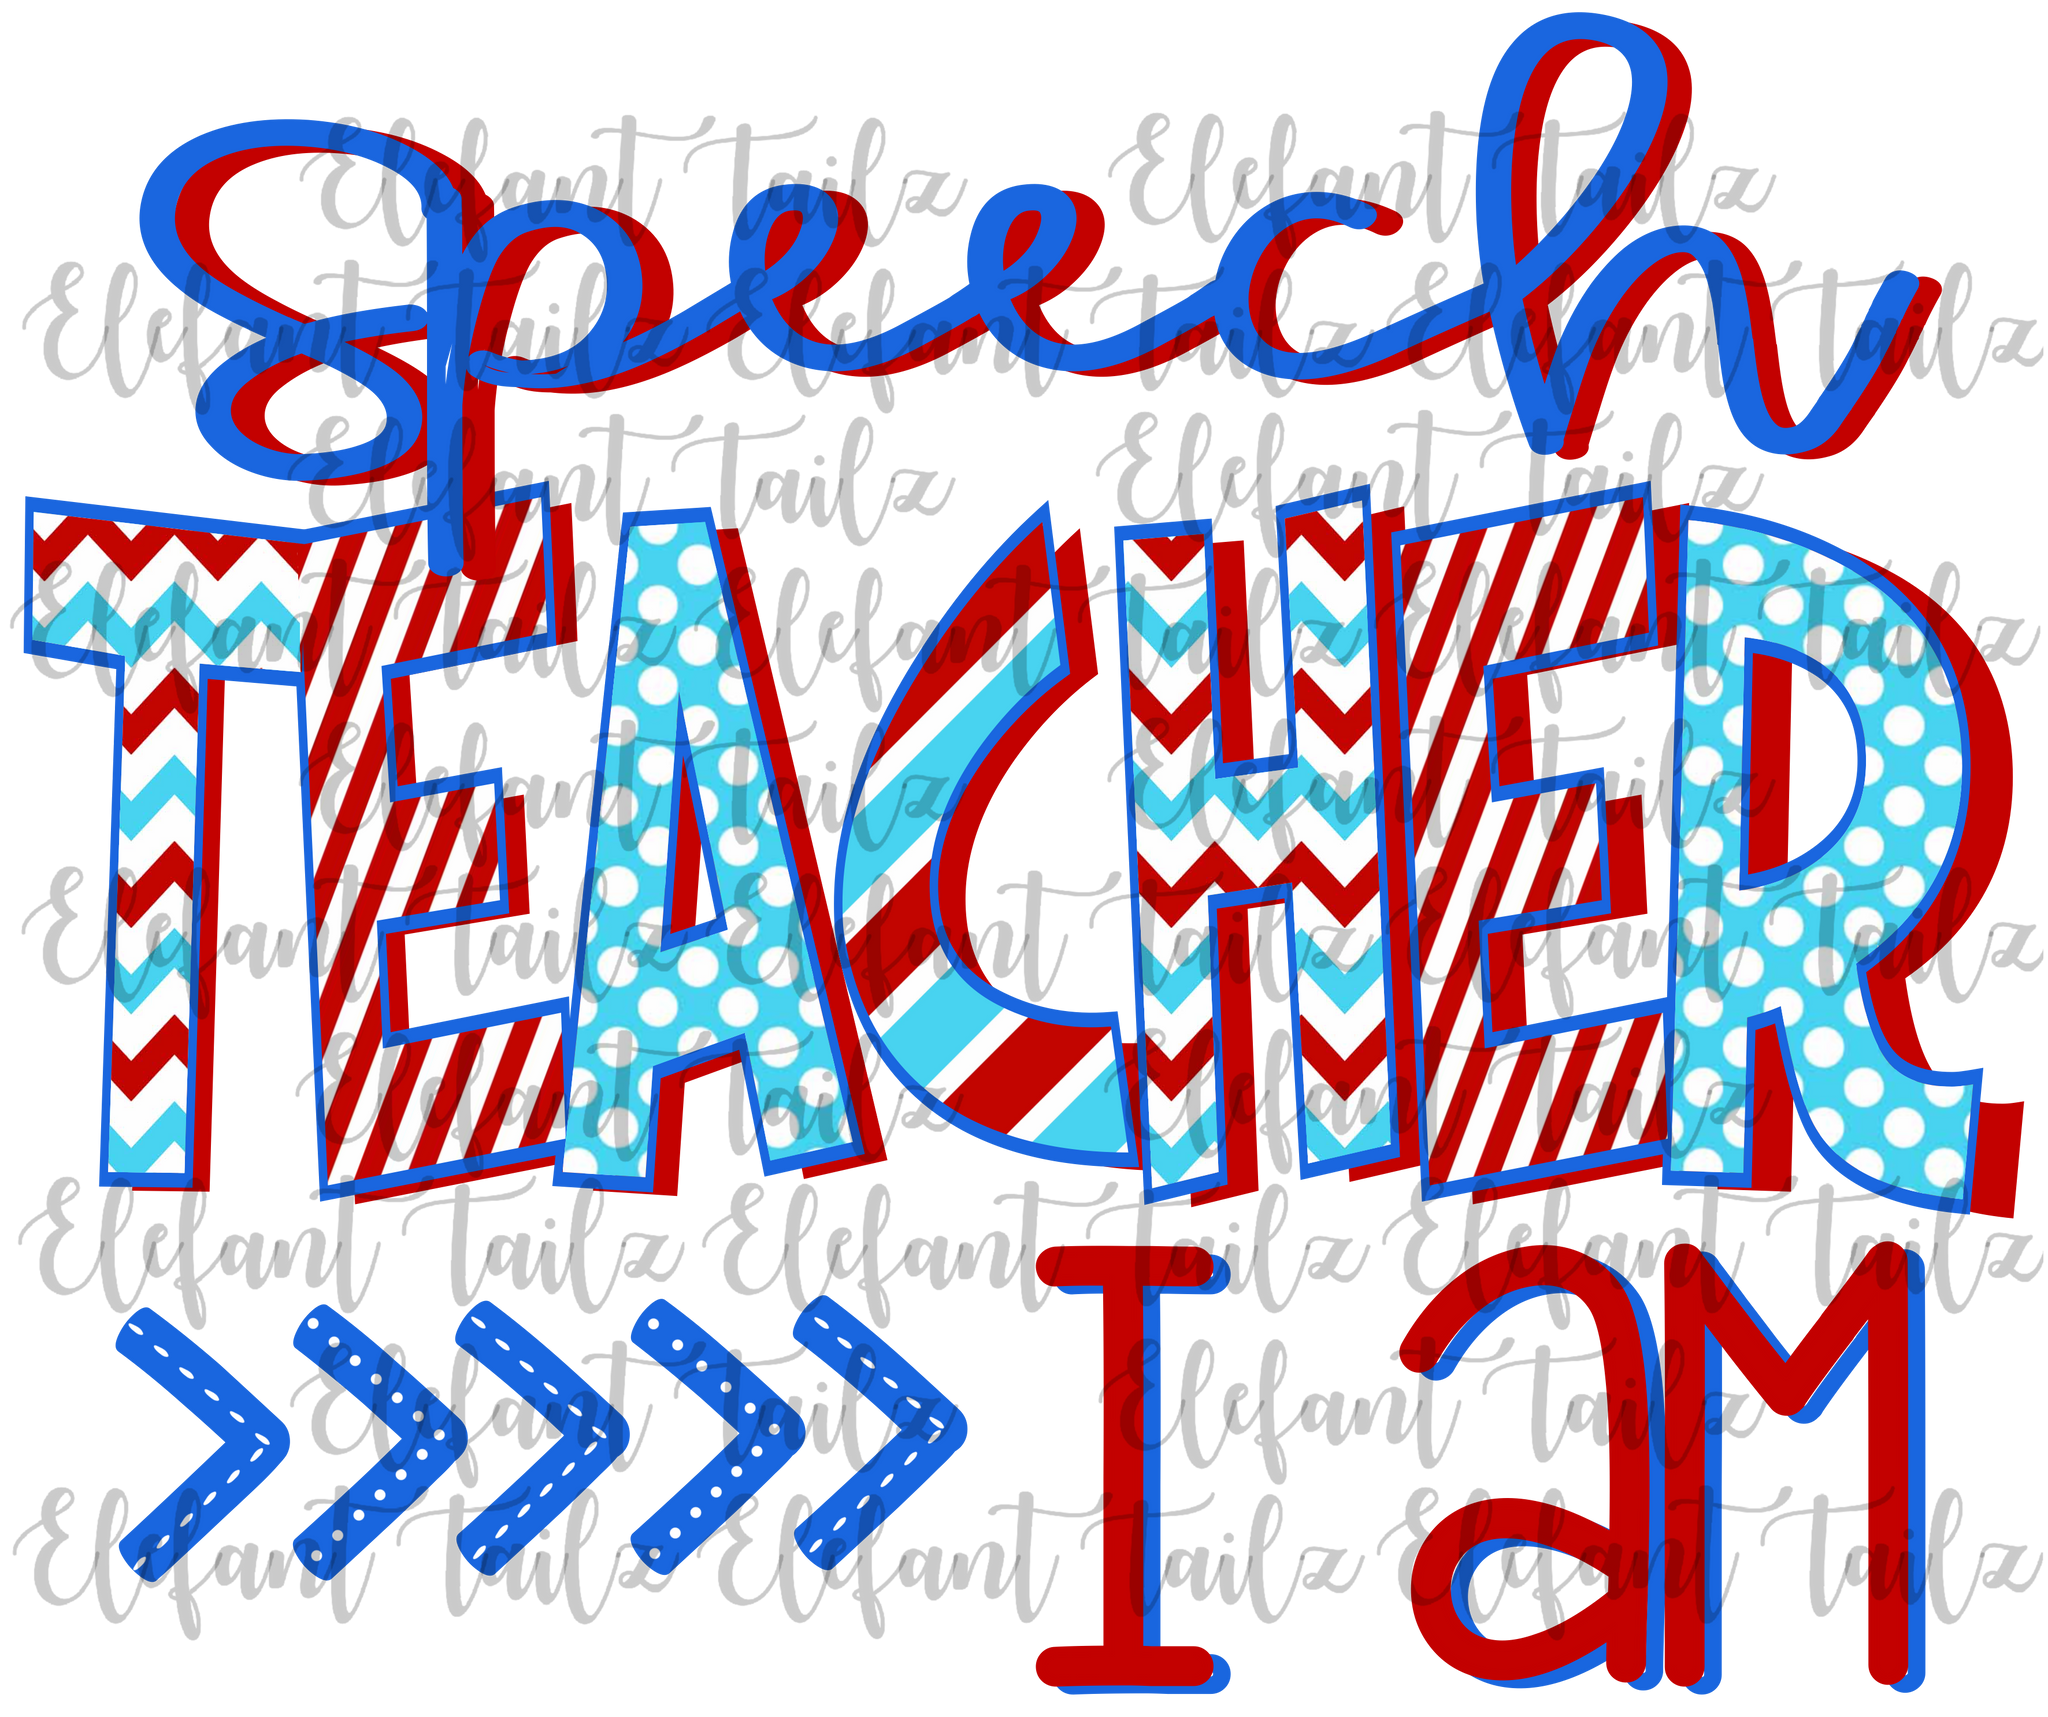 Speech Teacher I Am